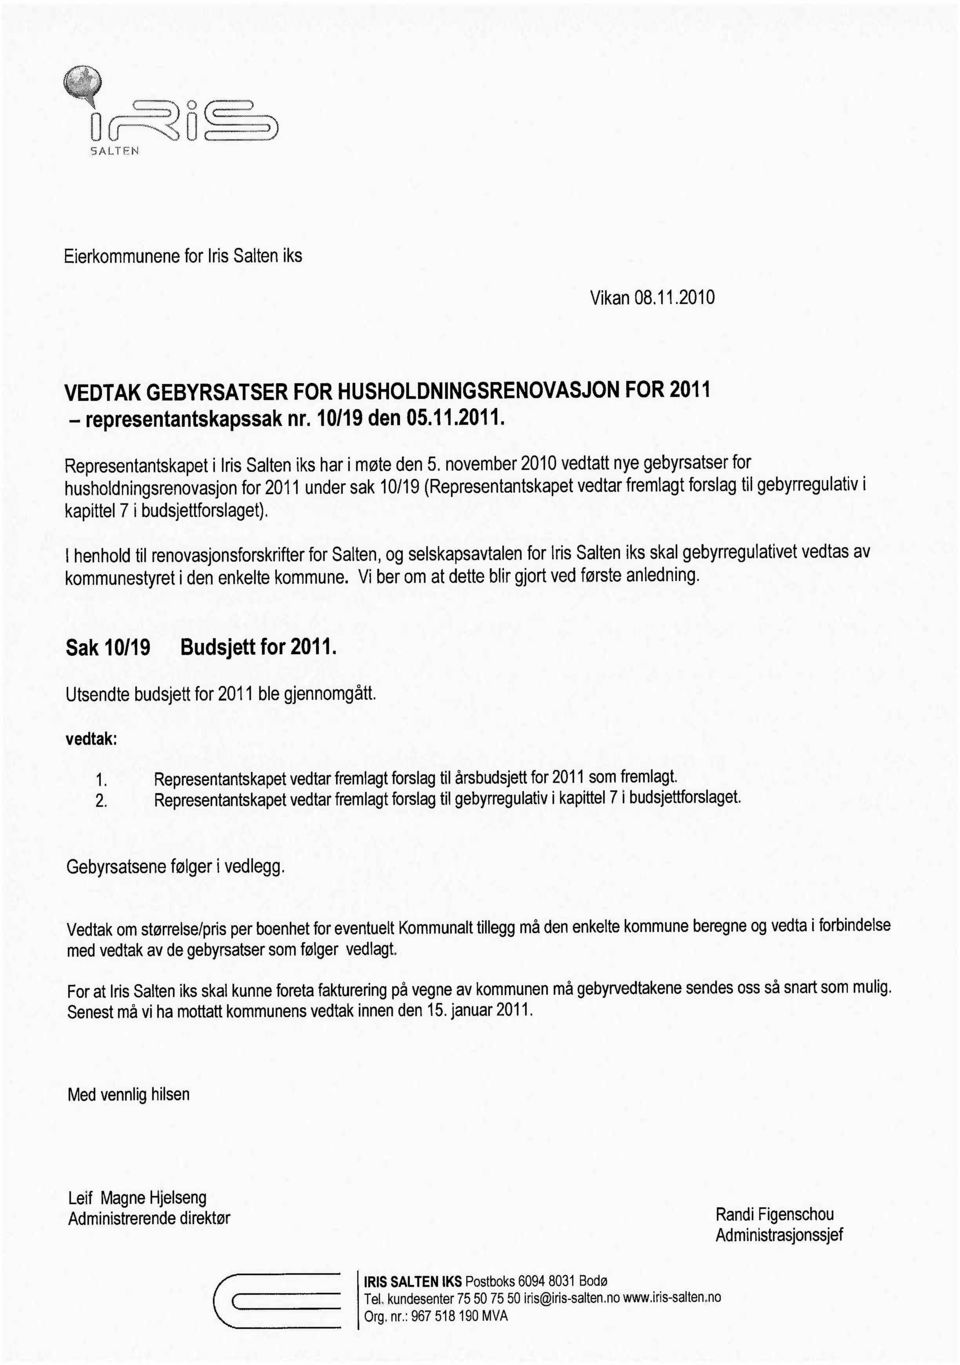 I henhold til renovasjonsforskrifter for Salten, og selskapsavtalen for Iris Salten iks skal gebyrregulativet vedtas av kommunestyret i den enkelte kommune.